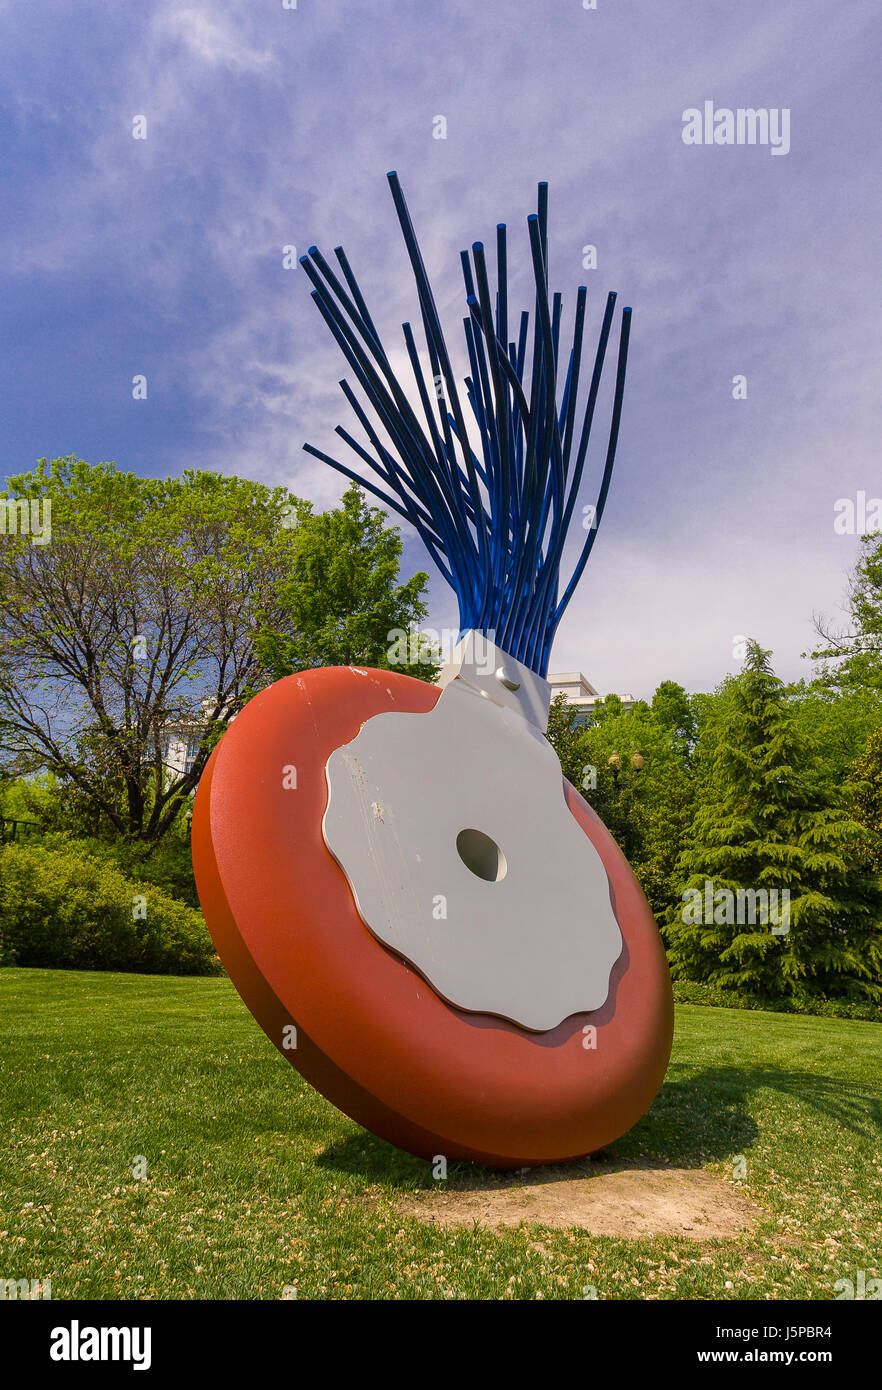 WASHINGTON, DC, USA - Machine à écrire 'Eraser' sculpture de Claes Oldenburg et Coosje van Bruggen, créé en 1999, à la National Gallery of Art Sculpture Garden. Banque D'Images